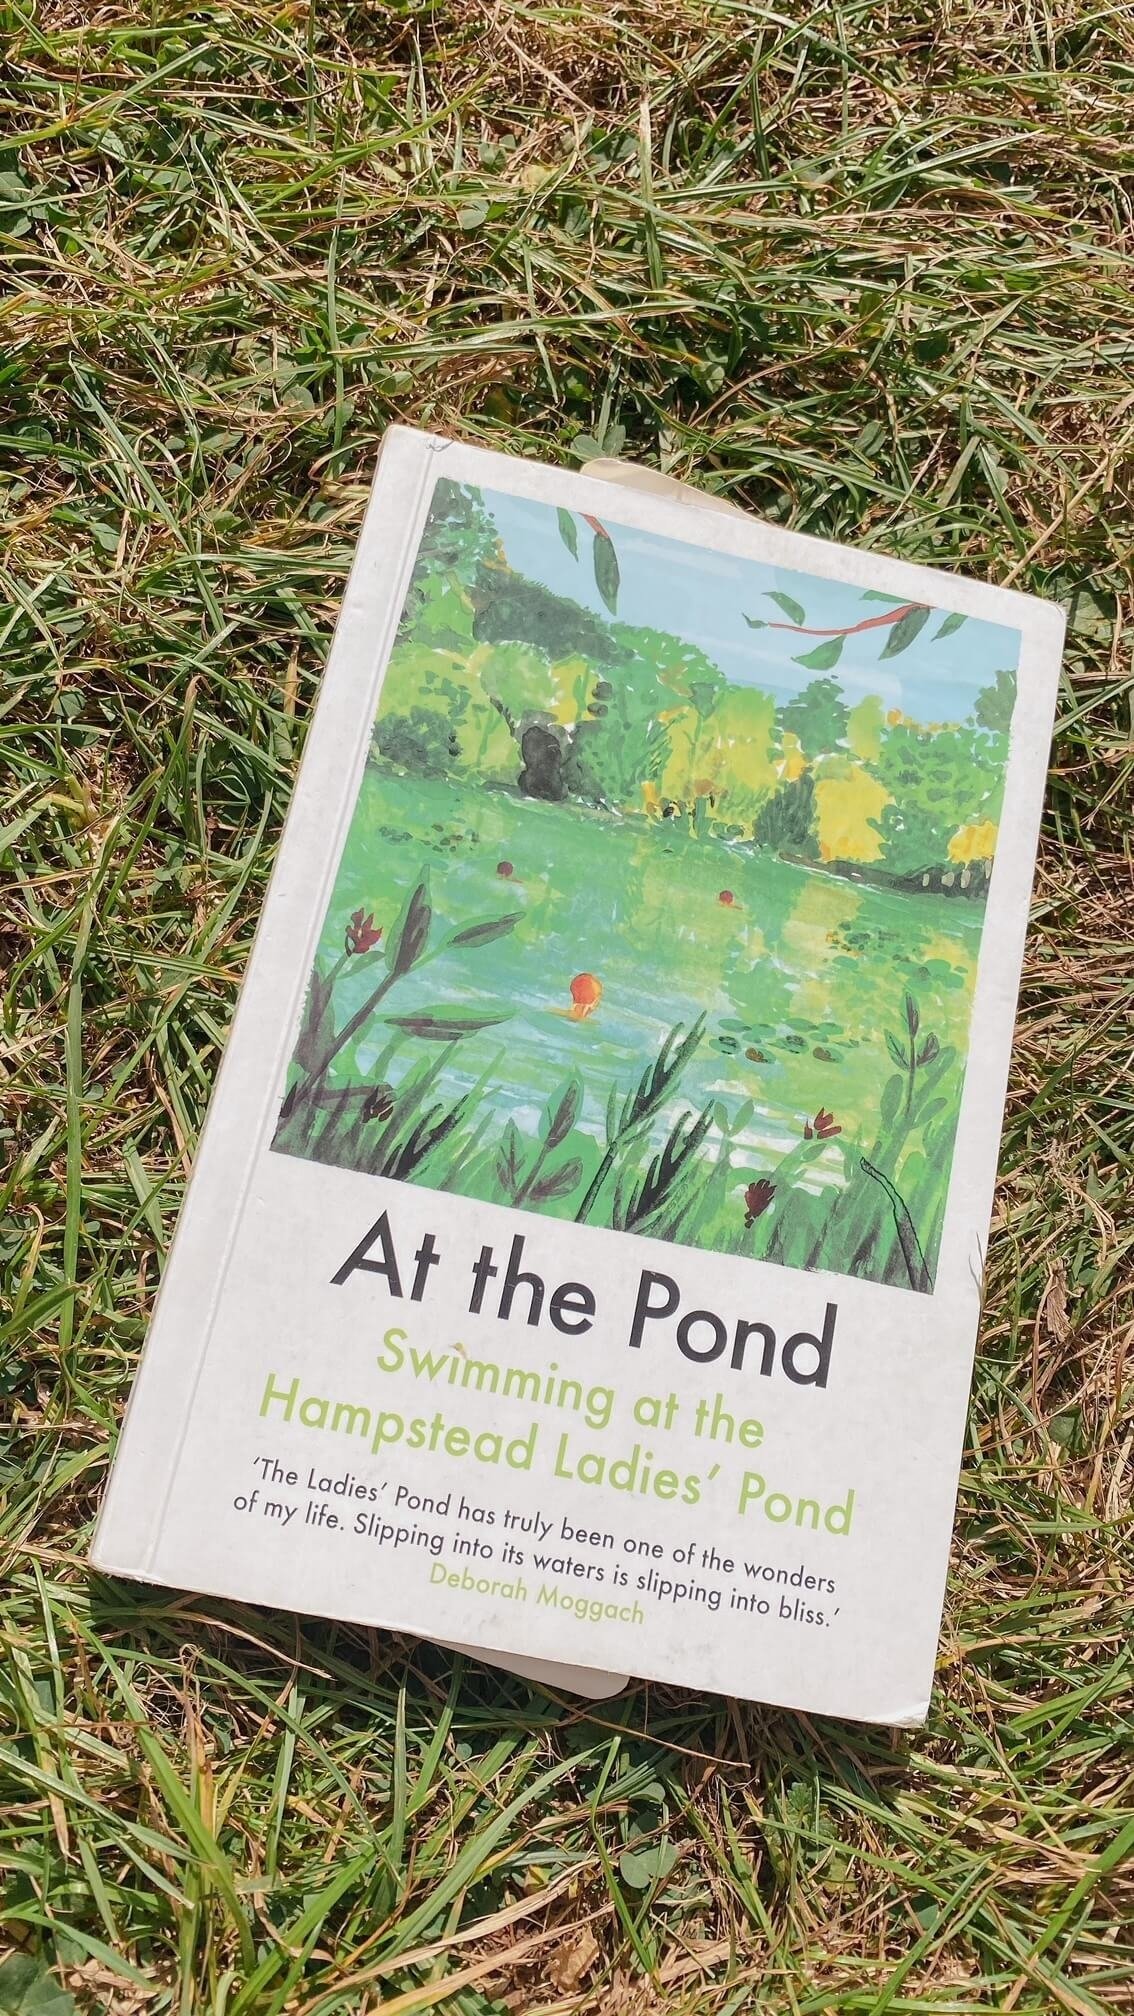 Kenwood Ladies' Pond, wild swimming London, Hampstead Heath, Hampstead Ladies’ Pond